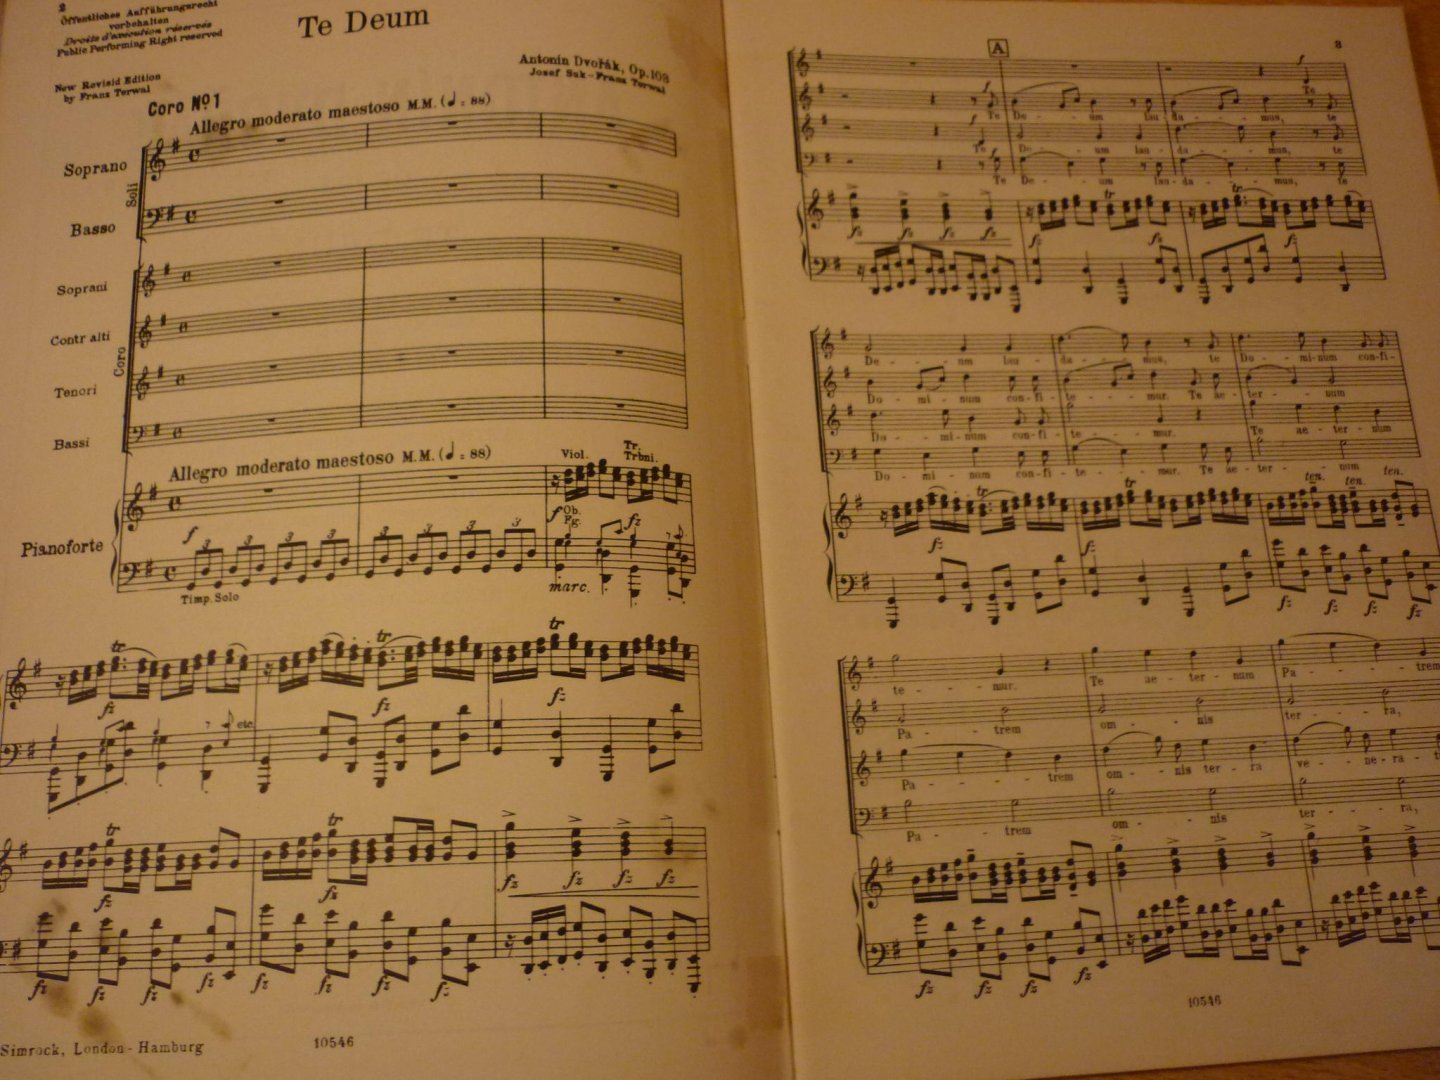 Dvorak; Antonín - Te Deum - op. 103; Klavierauszug mit Text; Partition pour Chant et Piano; Vocal Score (Josef Suk / Franz Terwal)